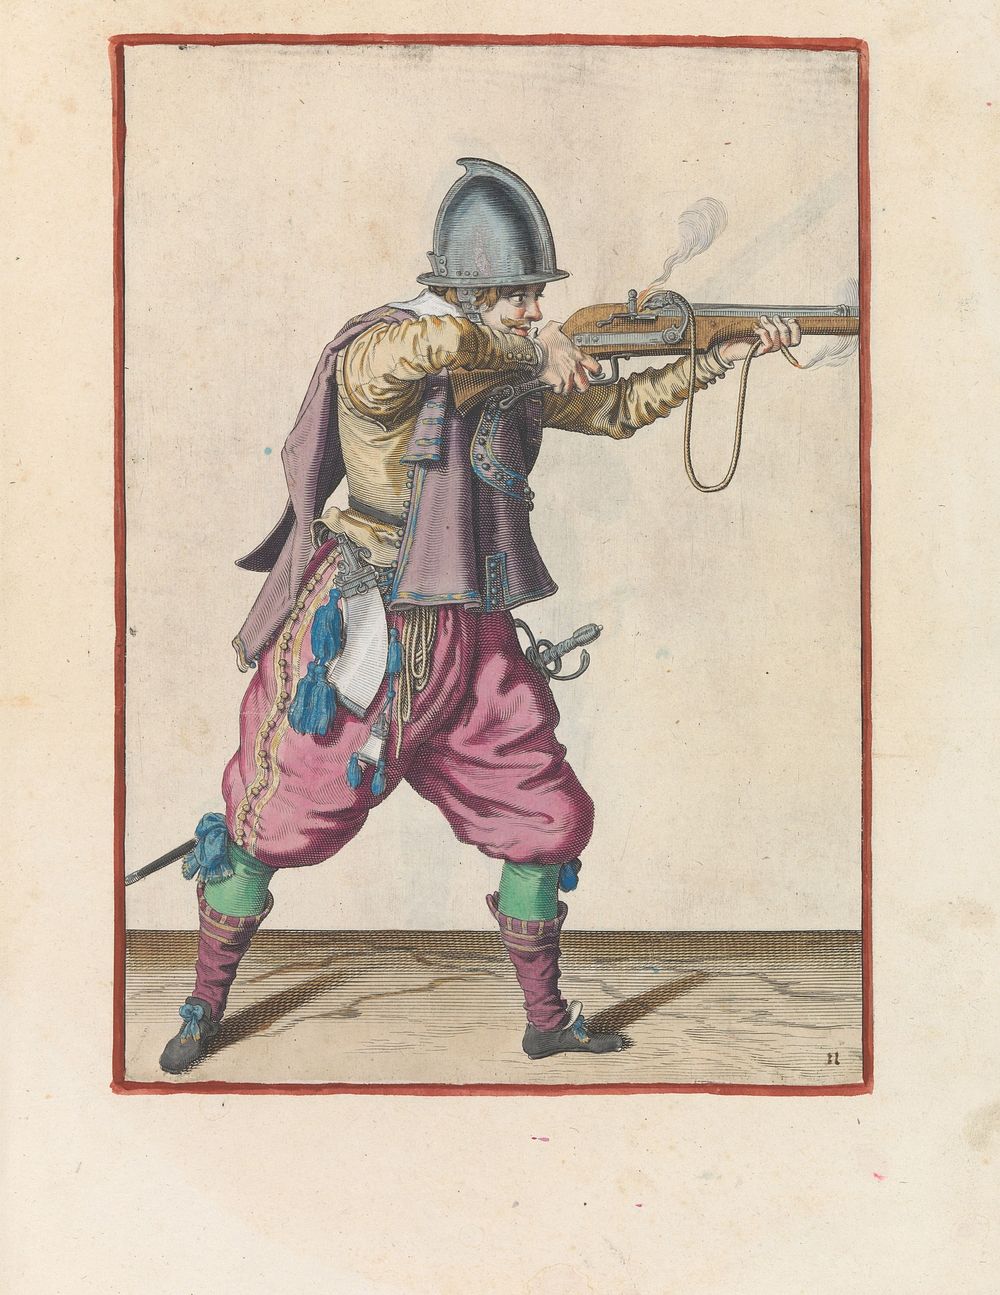 Soldaat richt en vuurt de roer (c. 1597 - 1607) by Jacques de Gheyn II and Jacques de Gheyn II